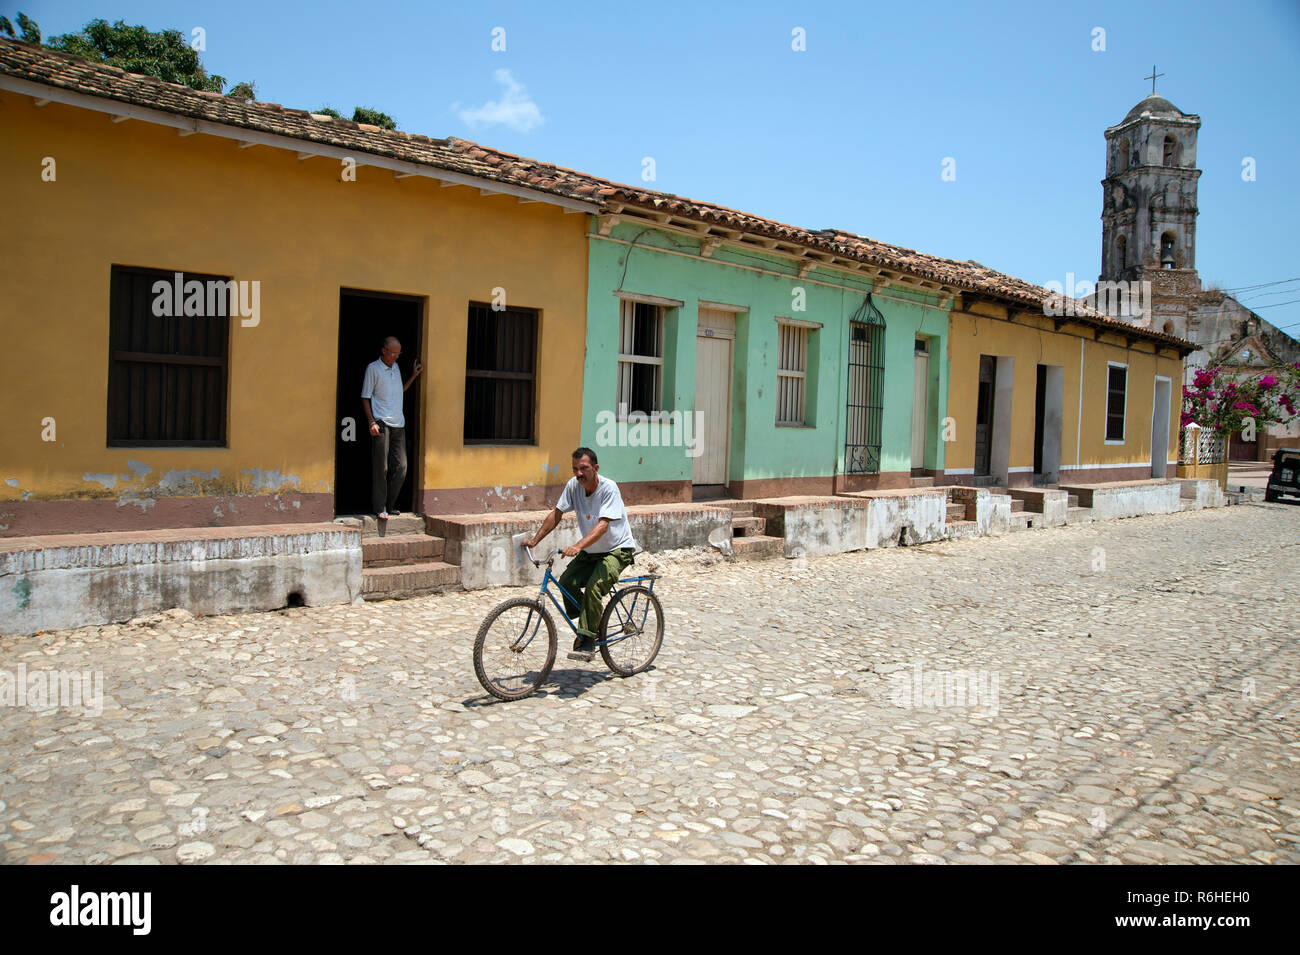 Eine kubanische Mann Zyklen einer gepflasterten Straße in Trinidad Kuba Vergangenheit traditionellen kubanischen Häuser Stockfoto